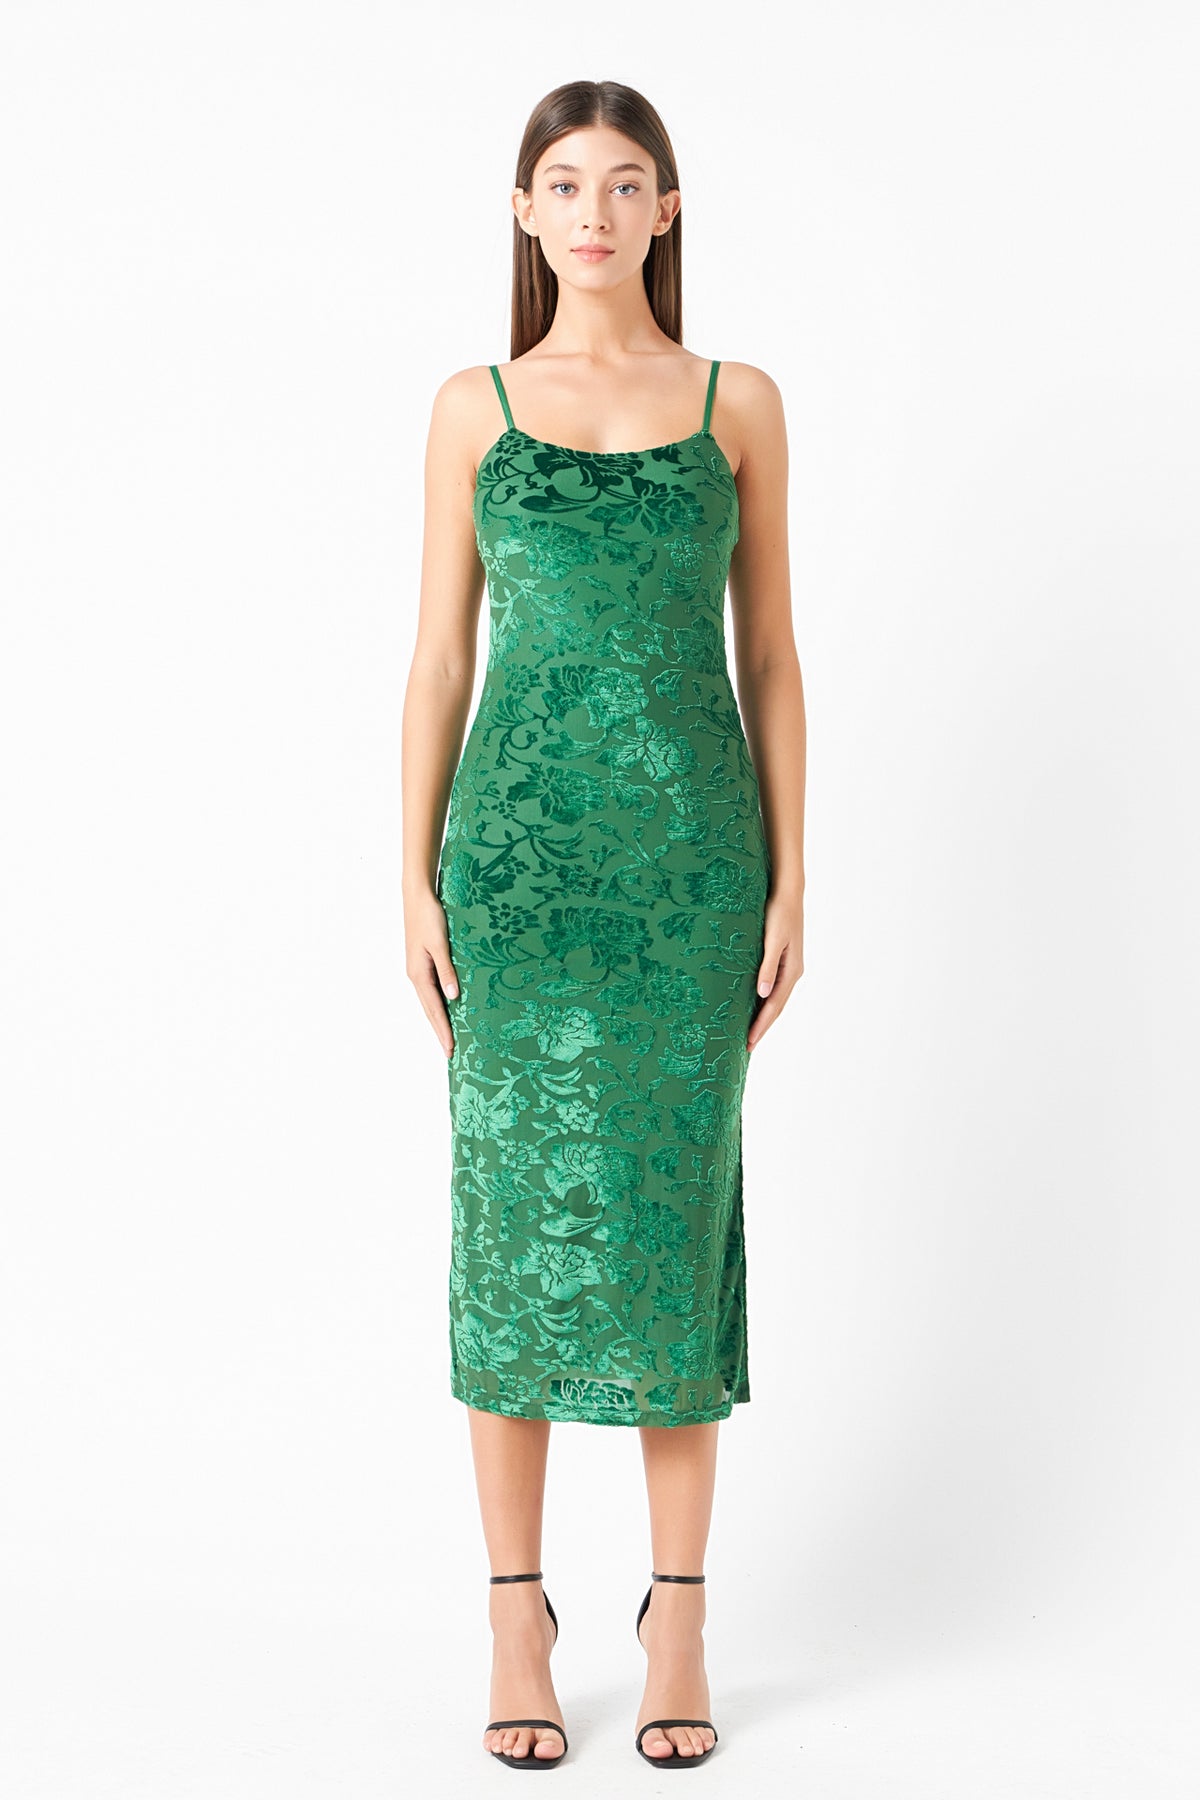 ENDLESS ROSE - Print Velvet Slip Dress - DRESSES available at Objectrare